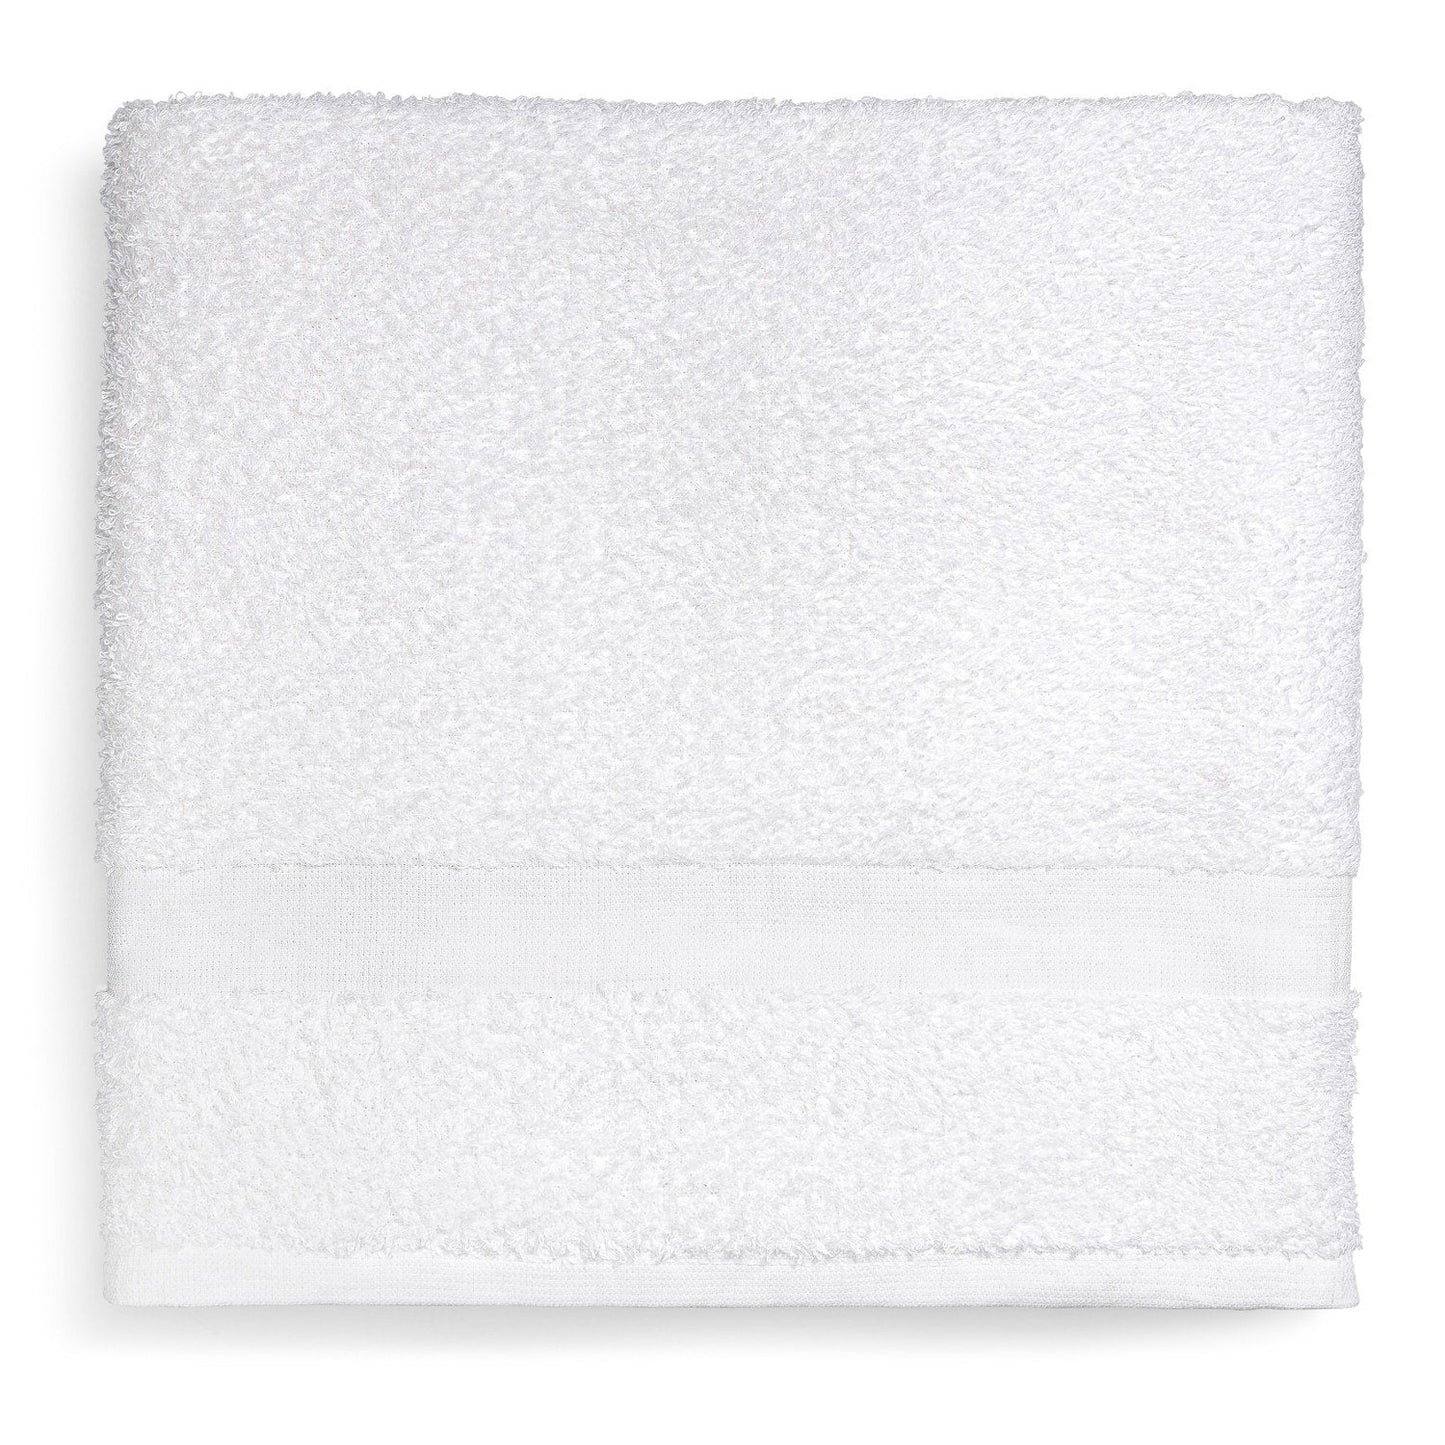 Platinum Bath Towel, 24"x48"-8 LBS, 5 DZ/cs